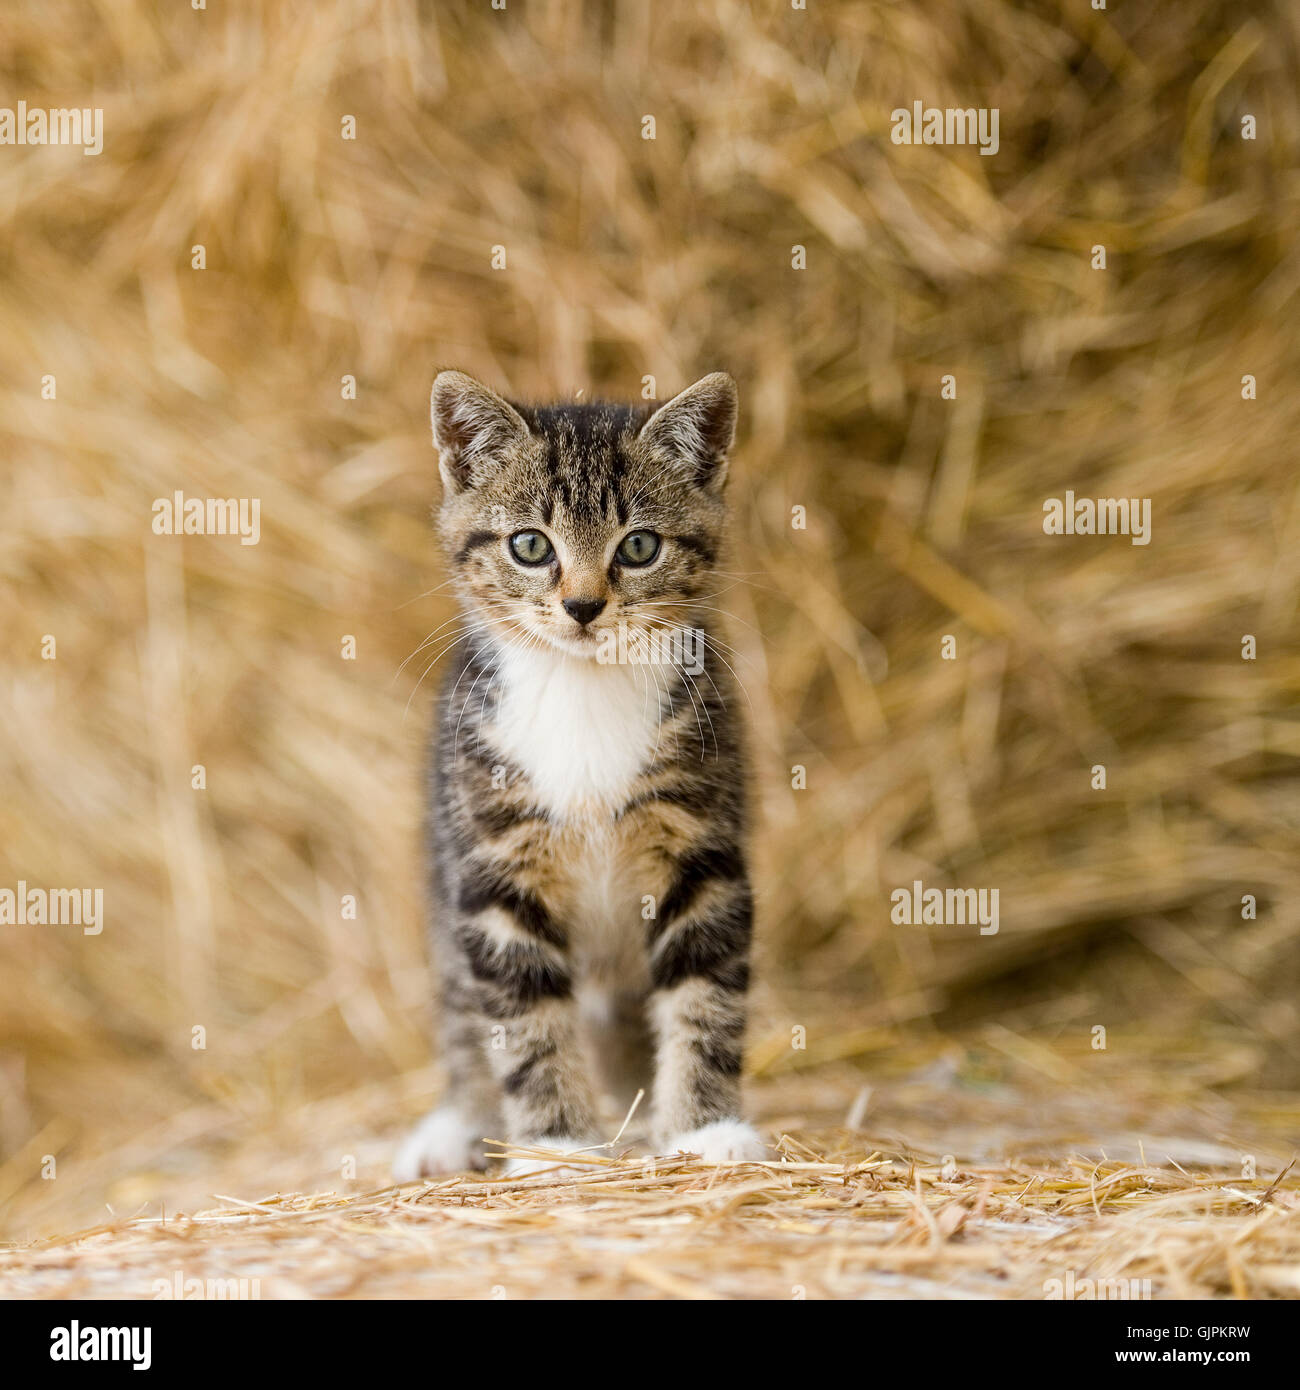 tabby farm kitten Stock Photo